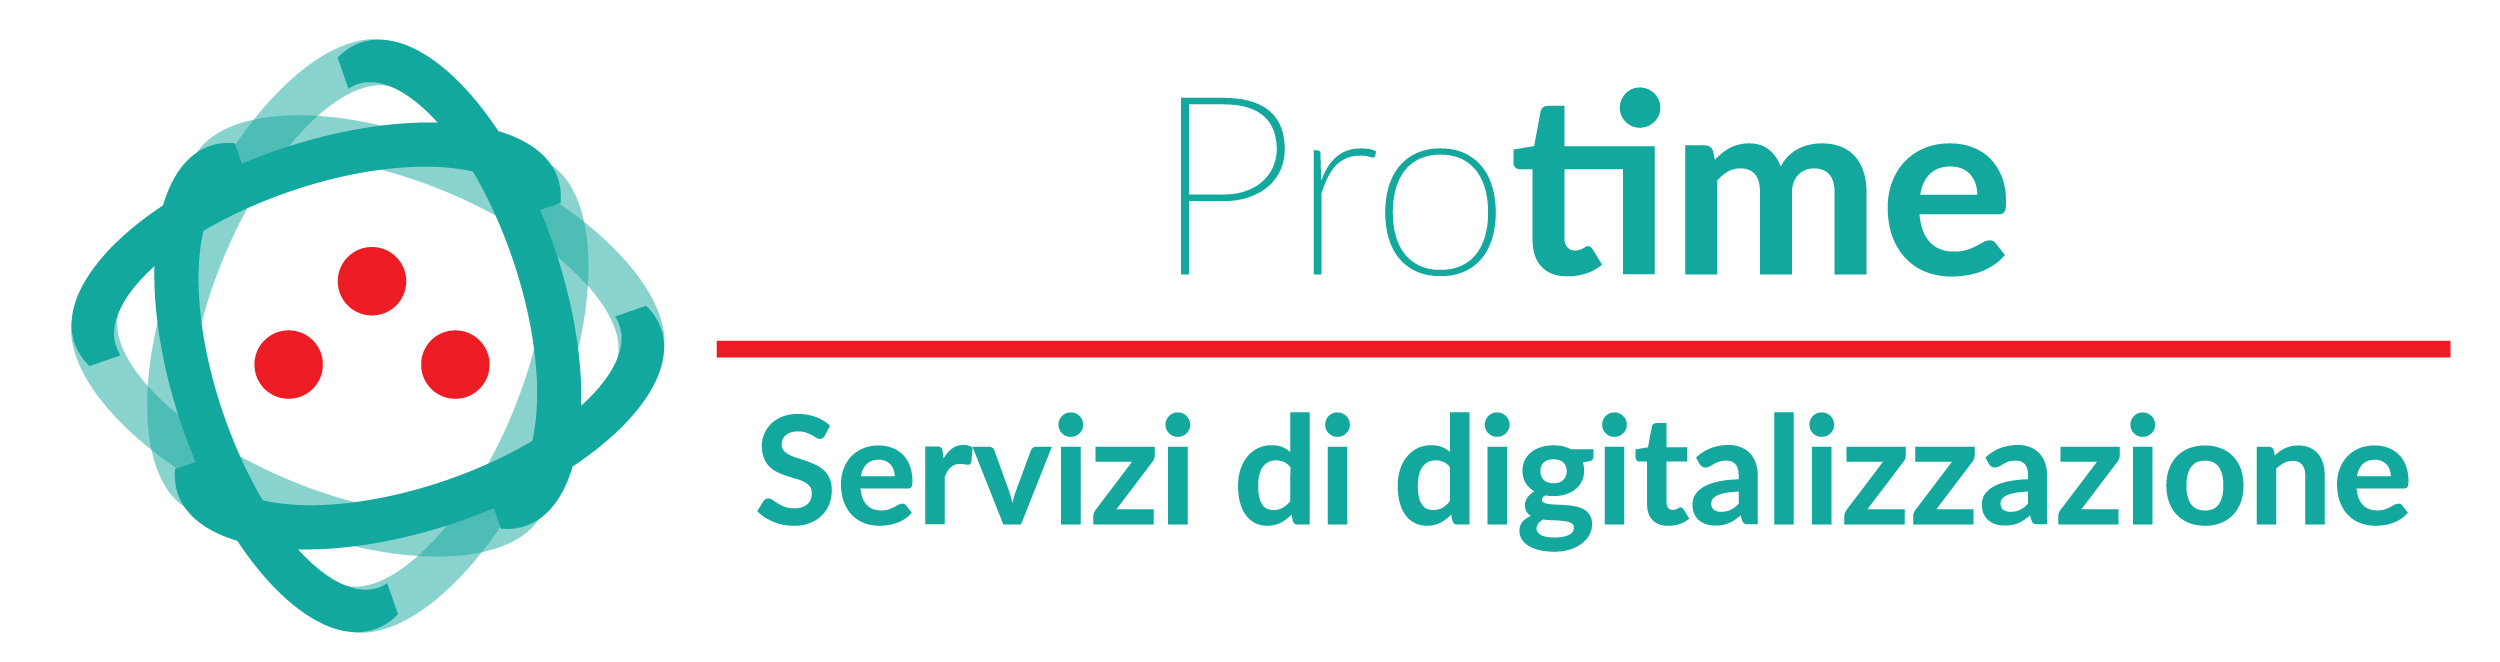 Protime – servizi di digitalizzazione